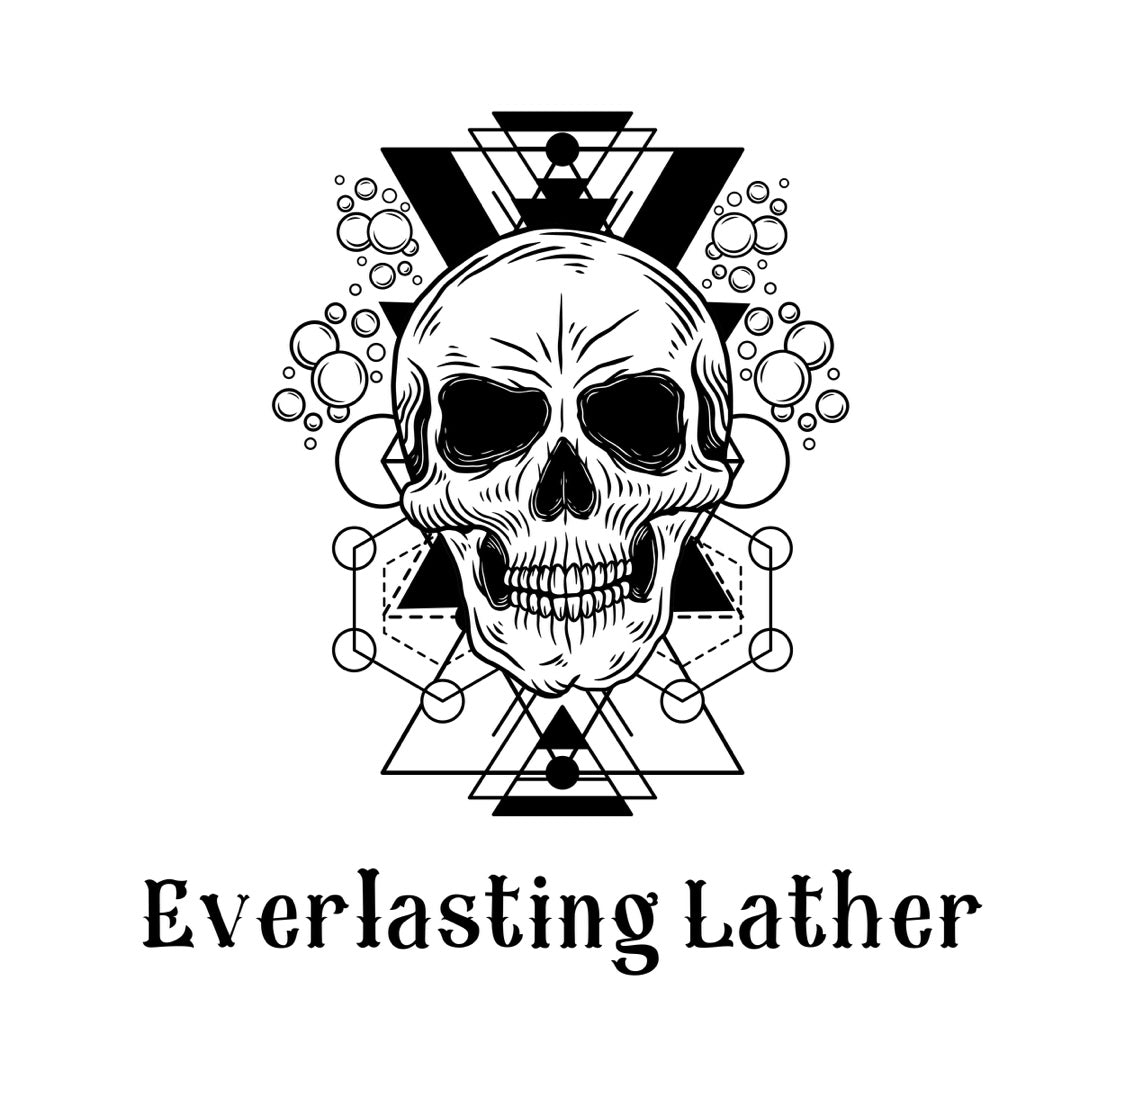 everlastinglather